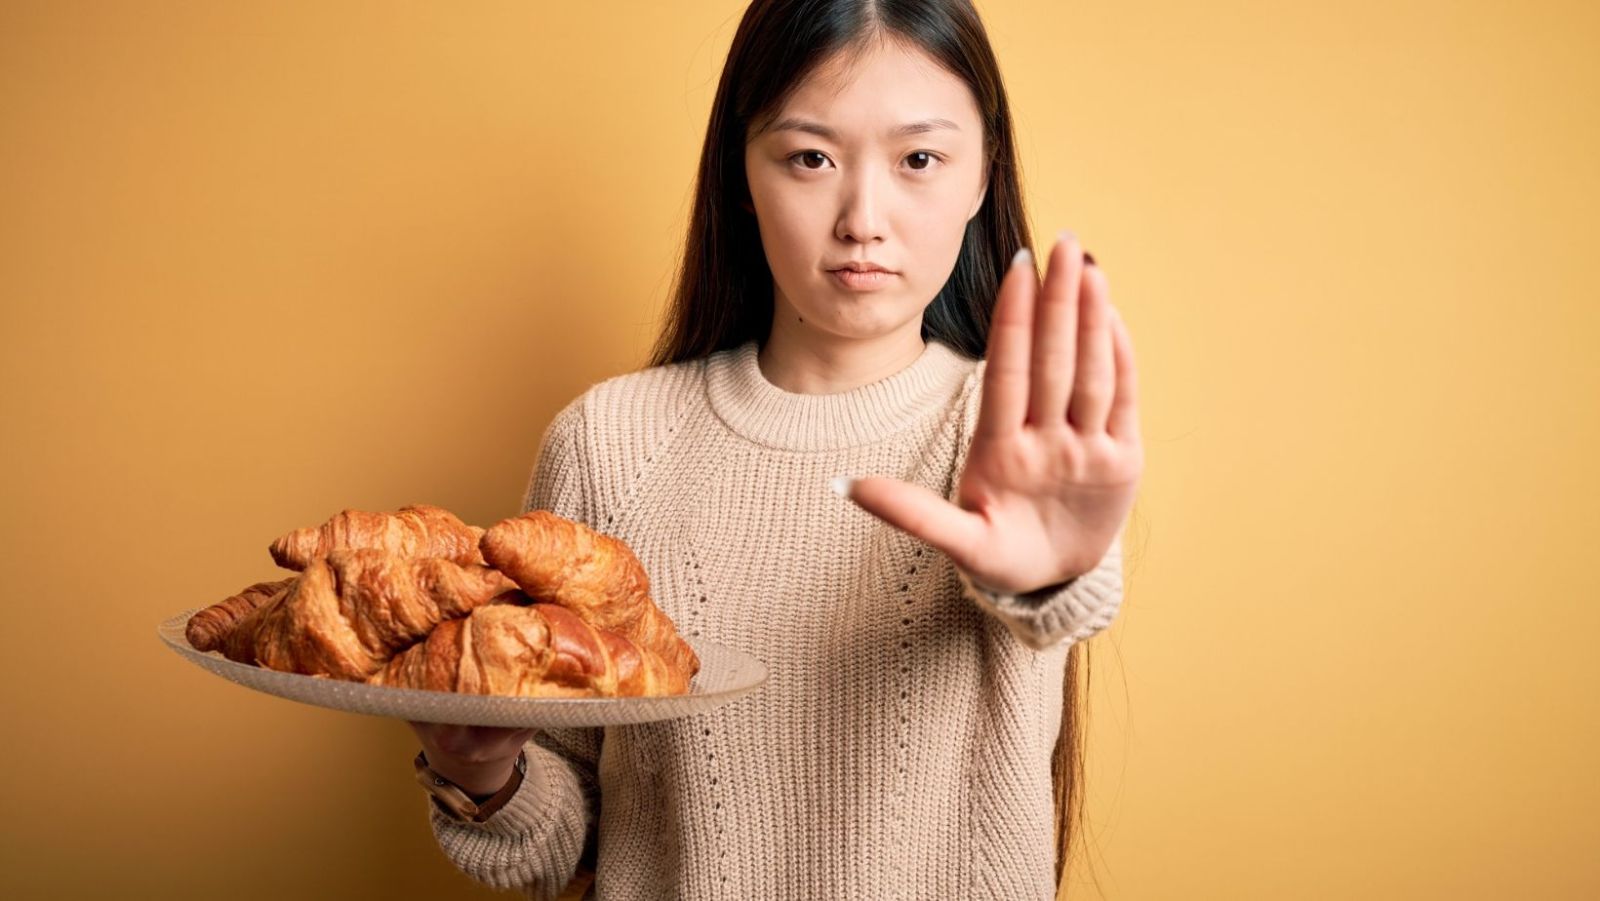 Intolérance au gluten : ces 7 symptômes digestifs courants chez les patients